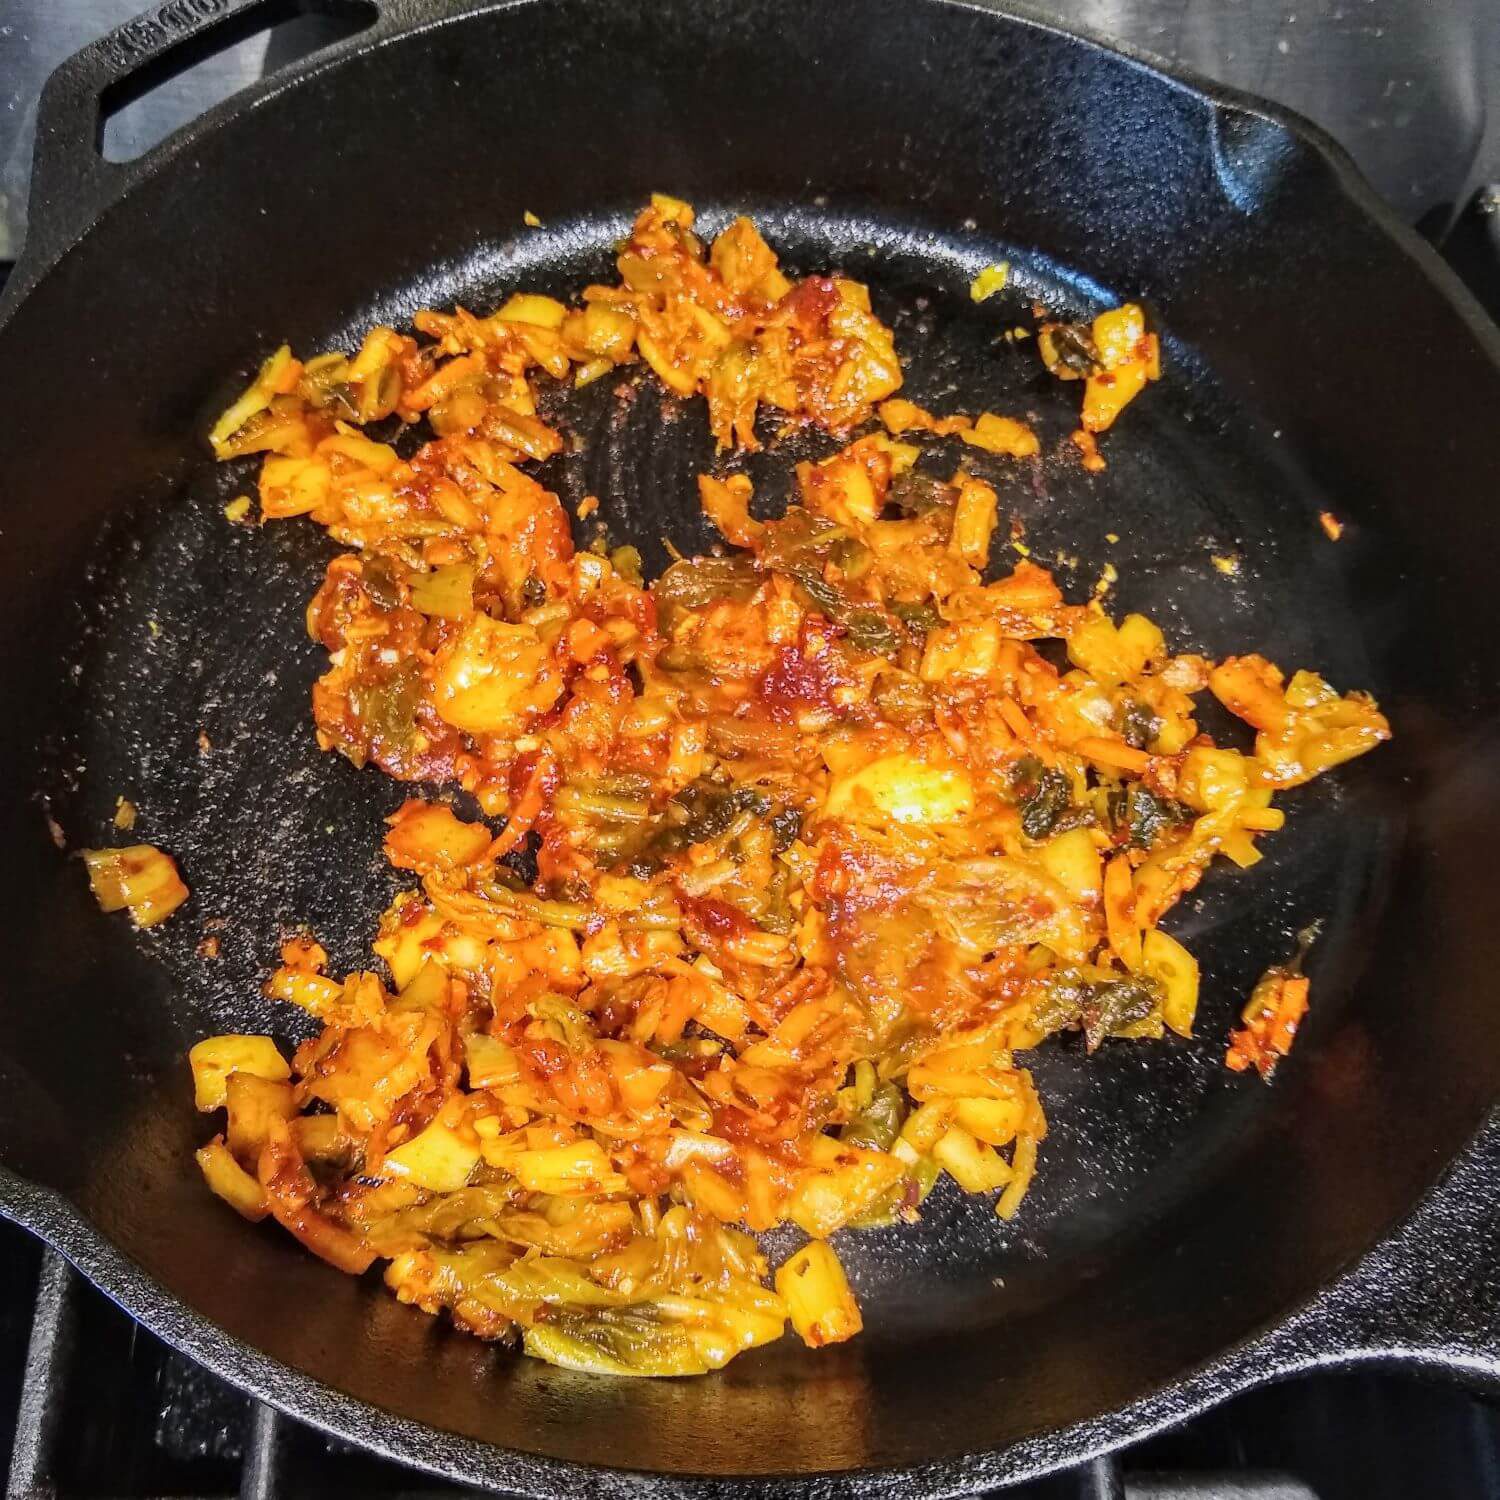 Frying the Kimchi and Gochujang